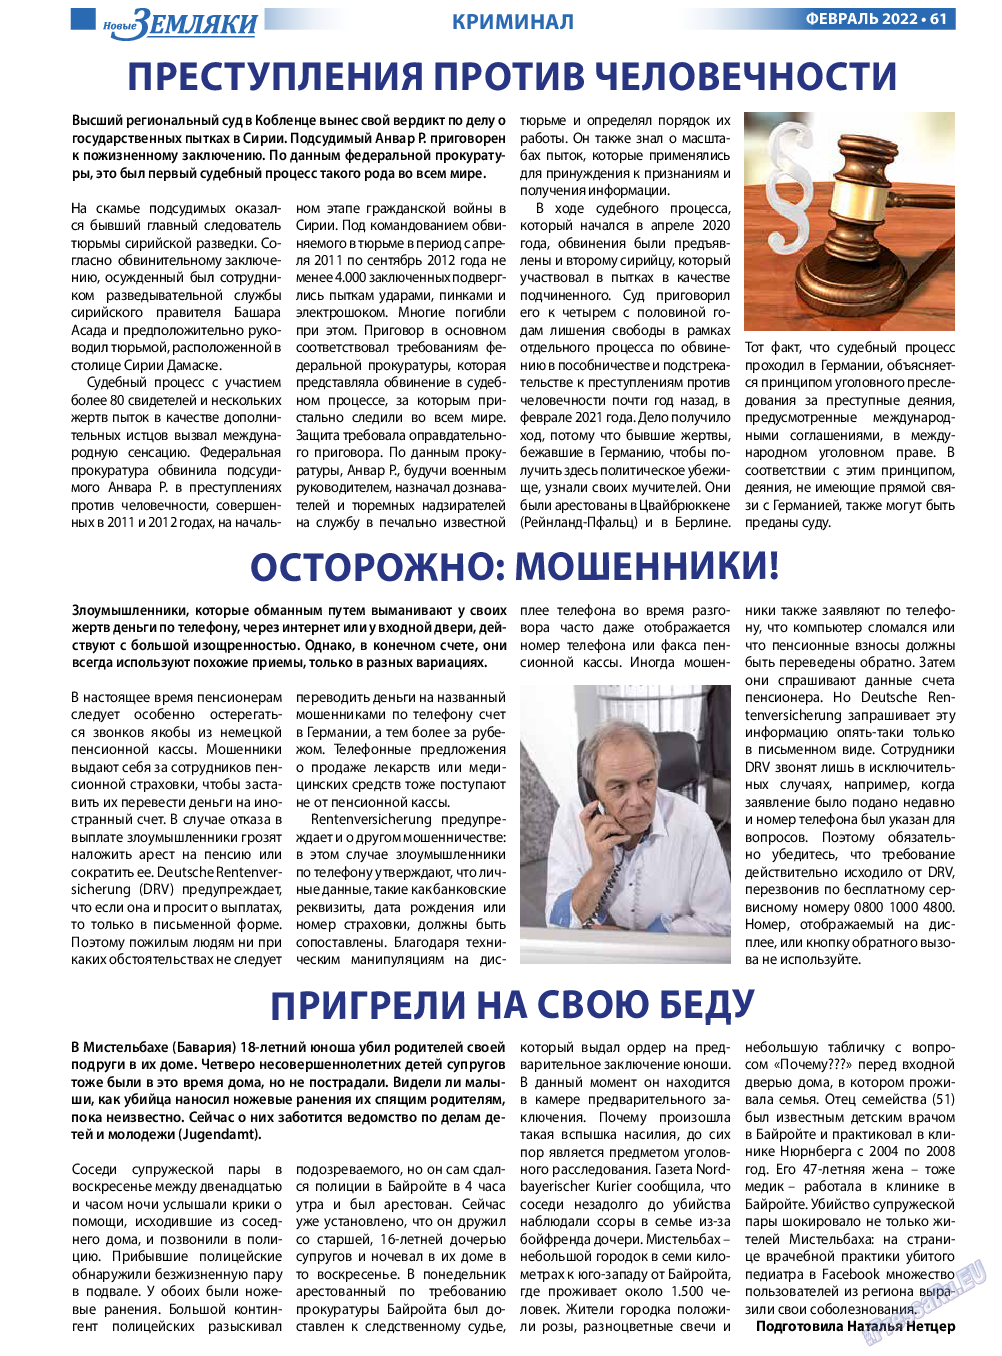 Новые Земляки, газета. 2022 №2 стр.61